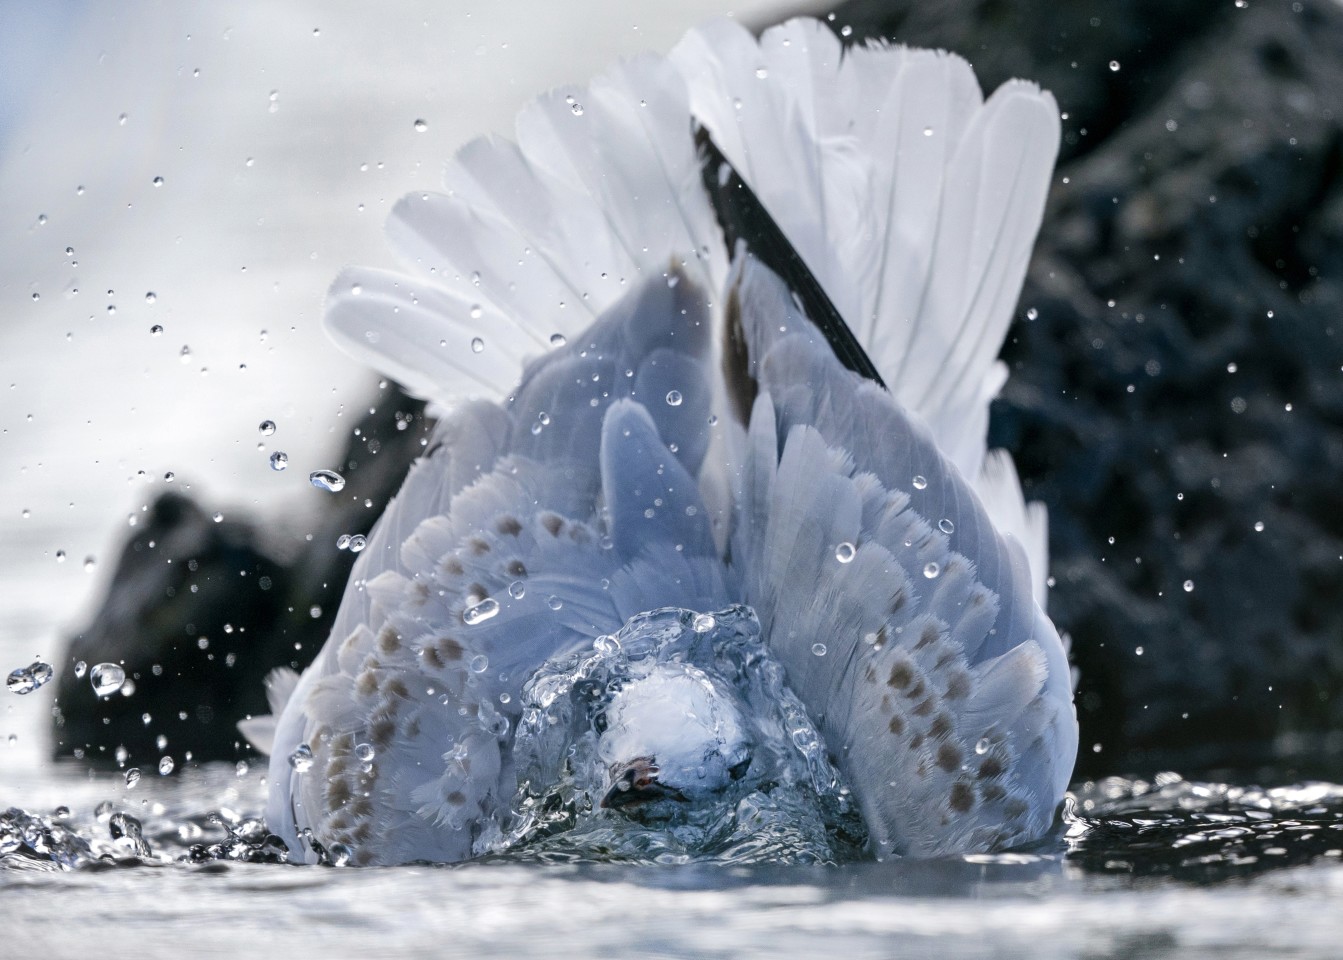 Финалист в категории Природа: "Красноногая чайка, принимающая ванну". "Эта молодая чайка очень хорошо купалась и поливалась водой. Благодаря достаточному количеству света для высокой скорости затвора я смог заморозить воду, чтобы ее голова была видна сквозь ореол воды". Фото: Simon Runting